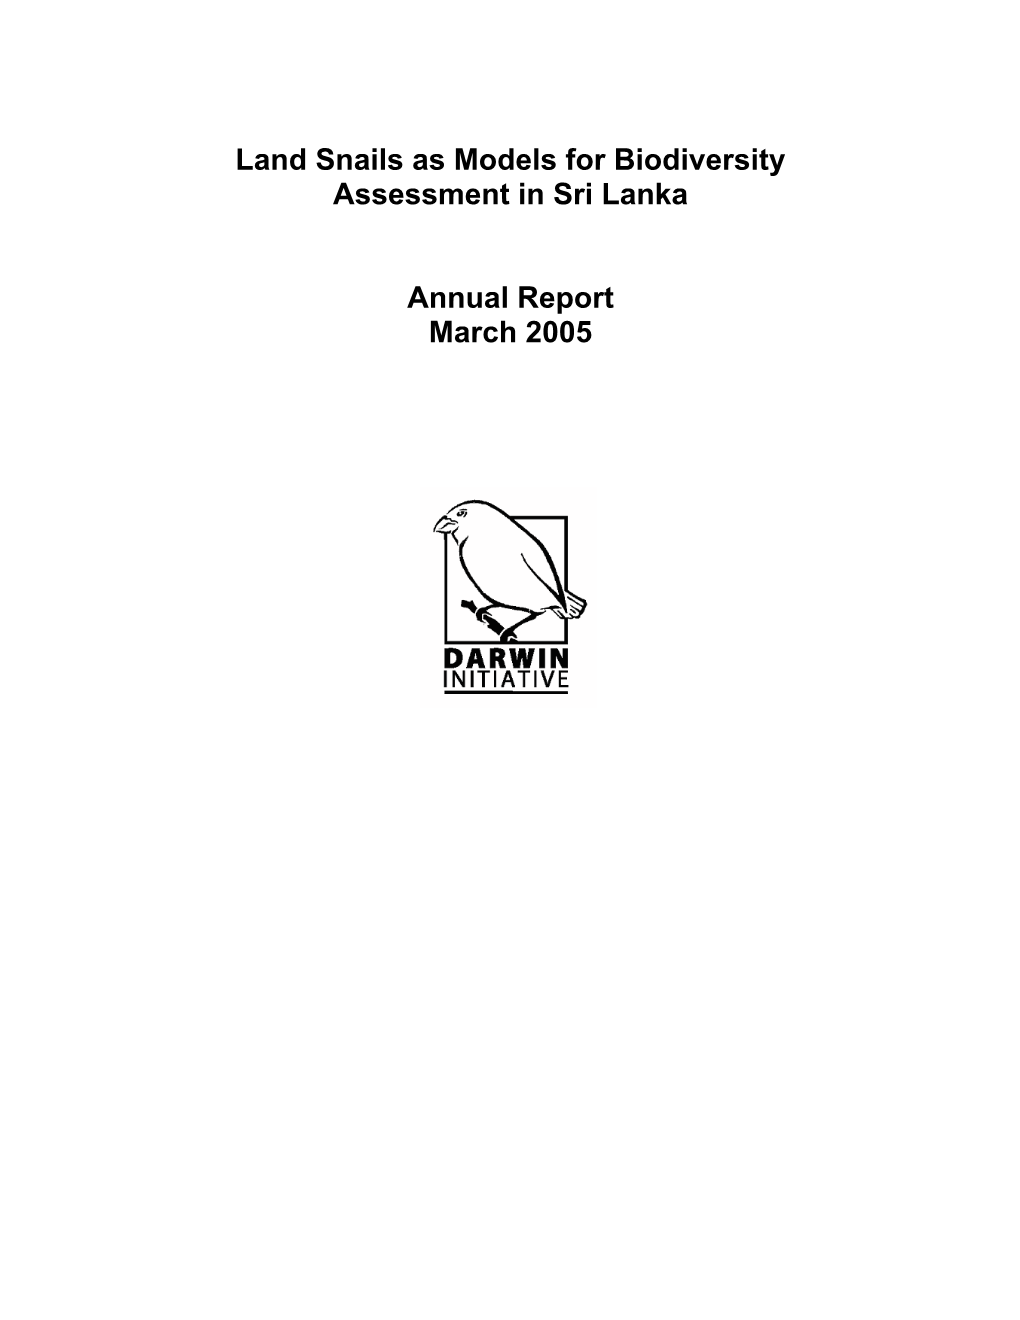 Land Snails As Models for Biodiversity Assessment in Sri Lanka Annual